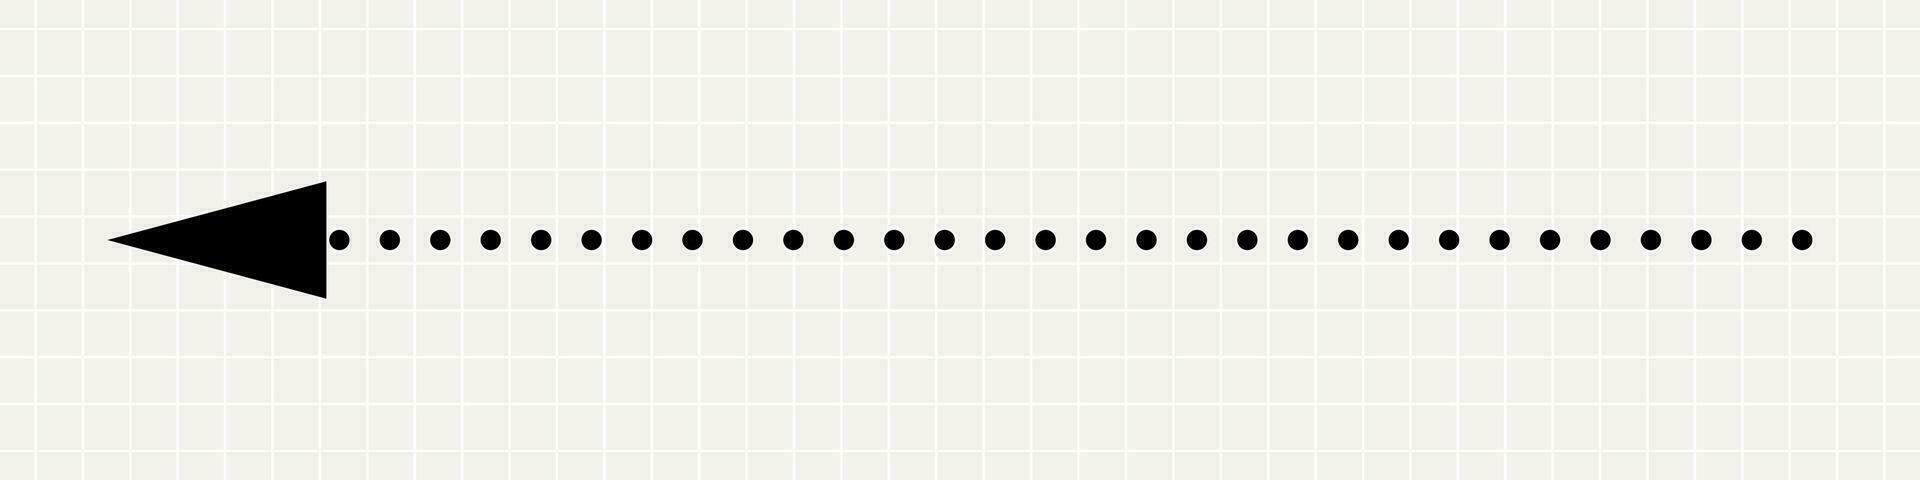 en tunn hetero svart pil pekande till de vänster. en minimalistisk pekare tillverkad av prickar på de bakgrund av en anteckningsbok ark. vektor